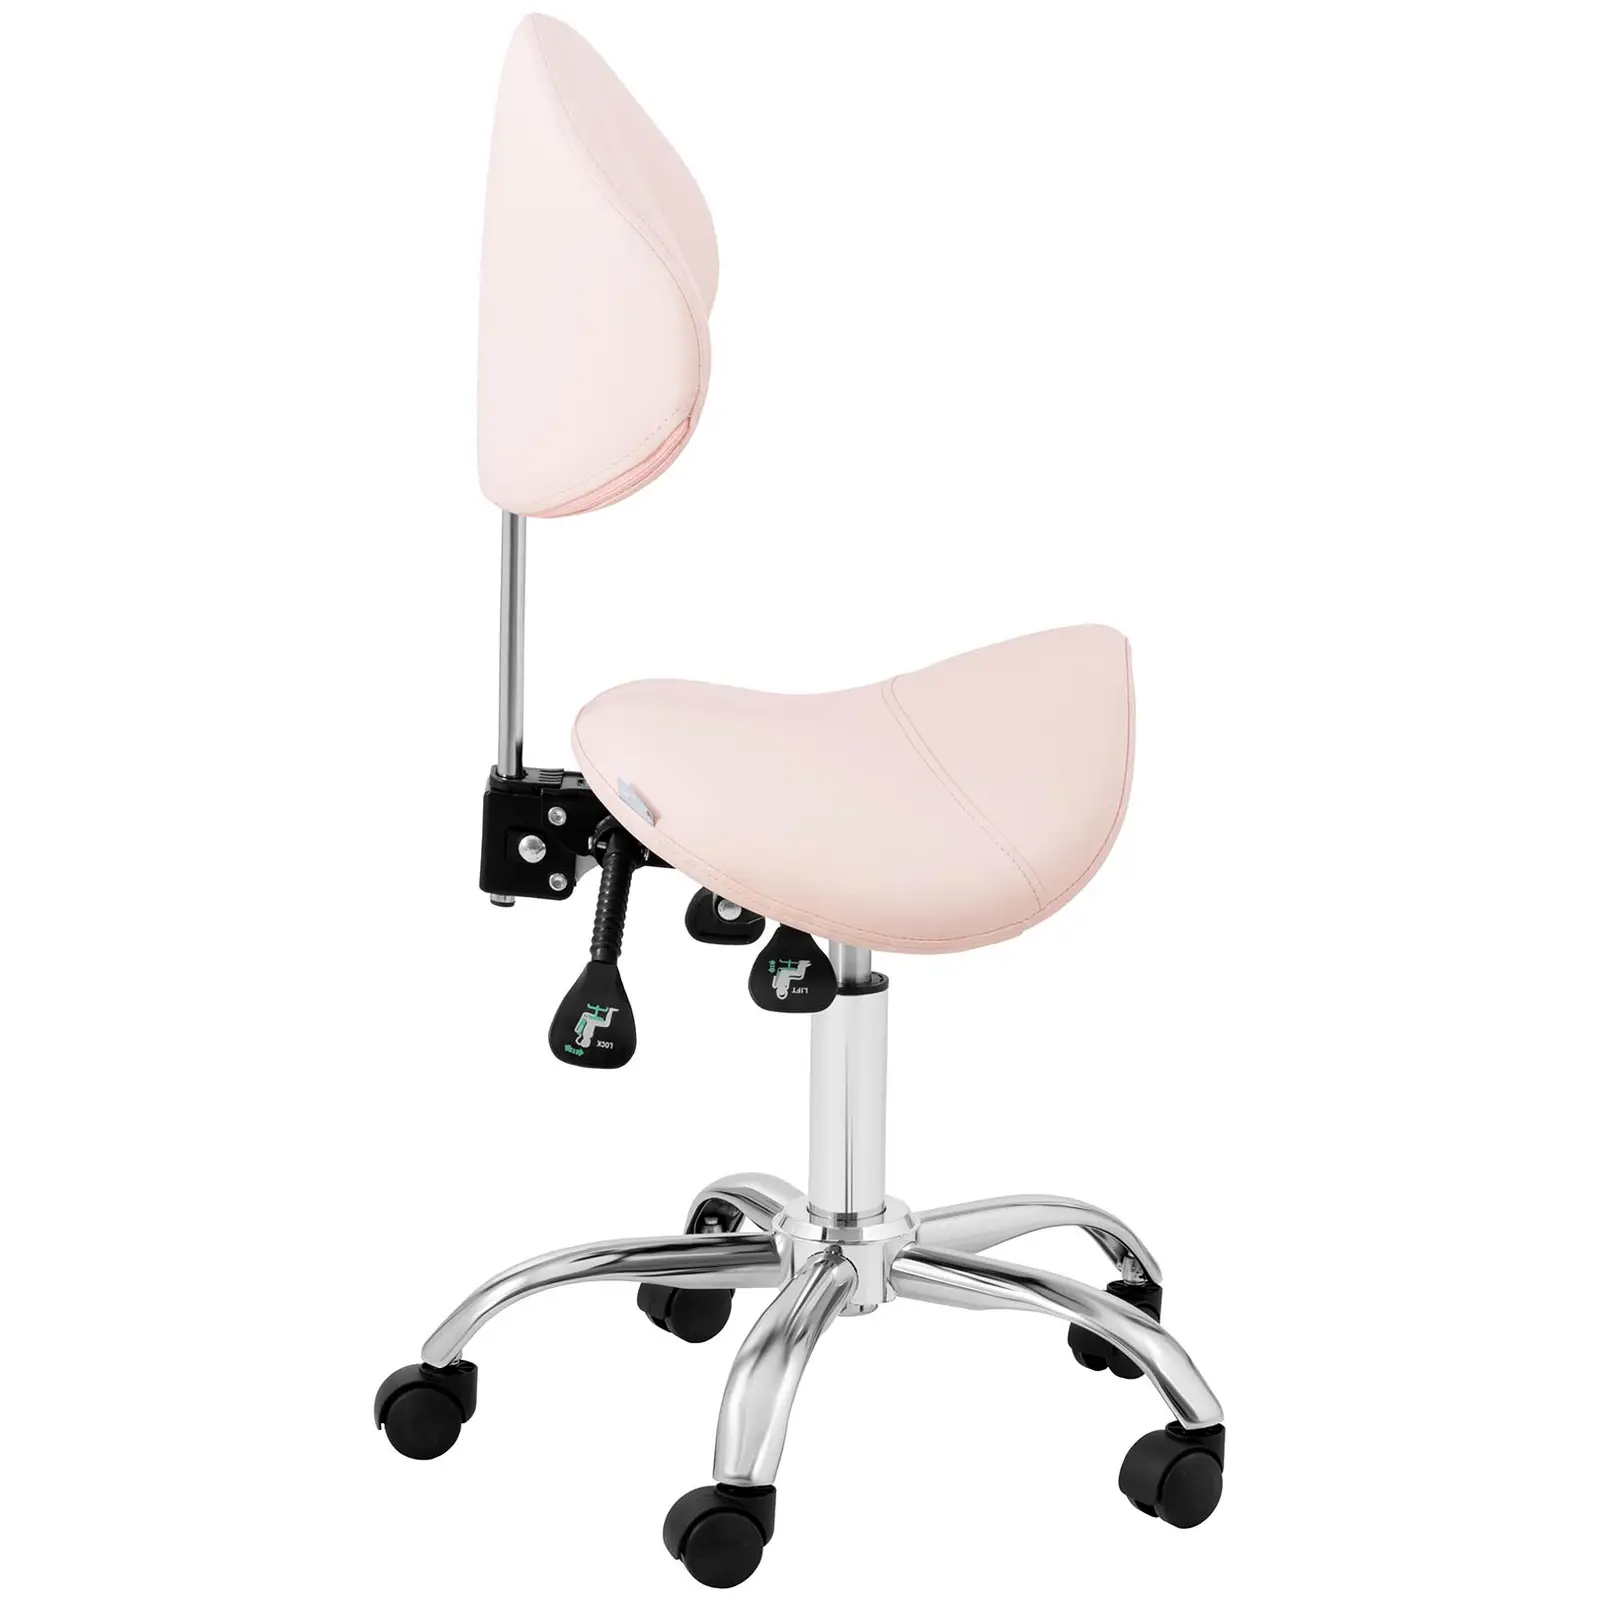 Sedlasti stol - nastavljiva višina naslona in sedeža - 55 - 69 cm - 150 kg - roza, srebrna